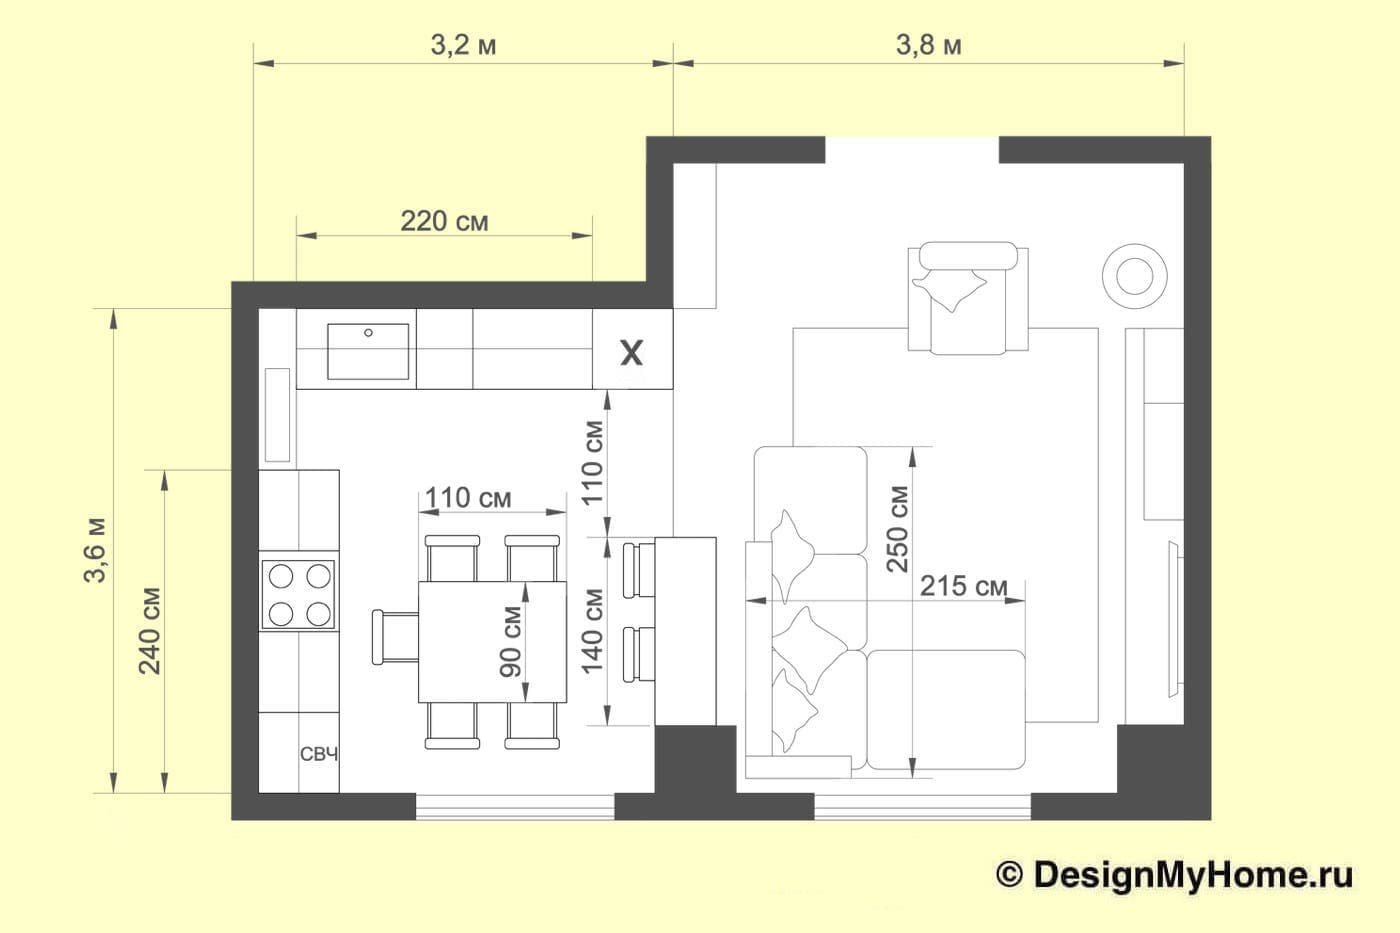 Кухня-гостиная 30 кв м планировка чертеж